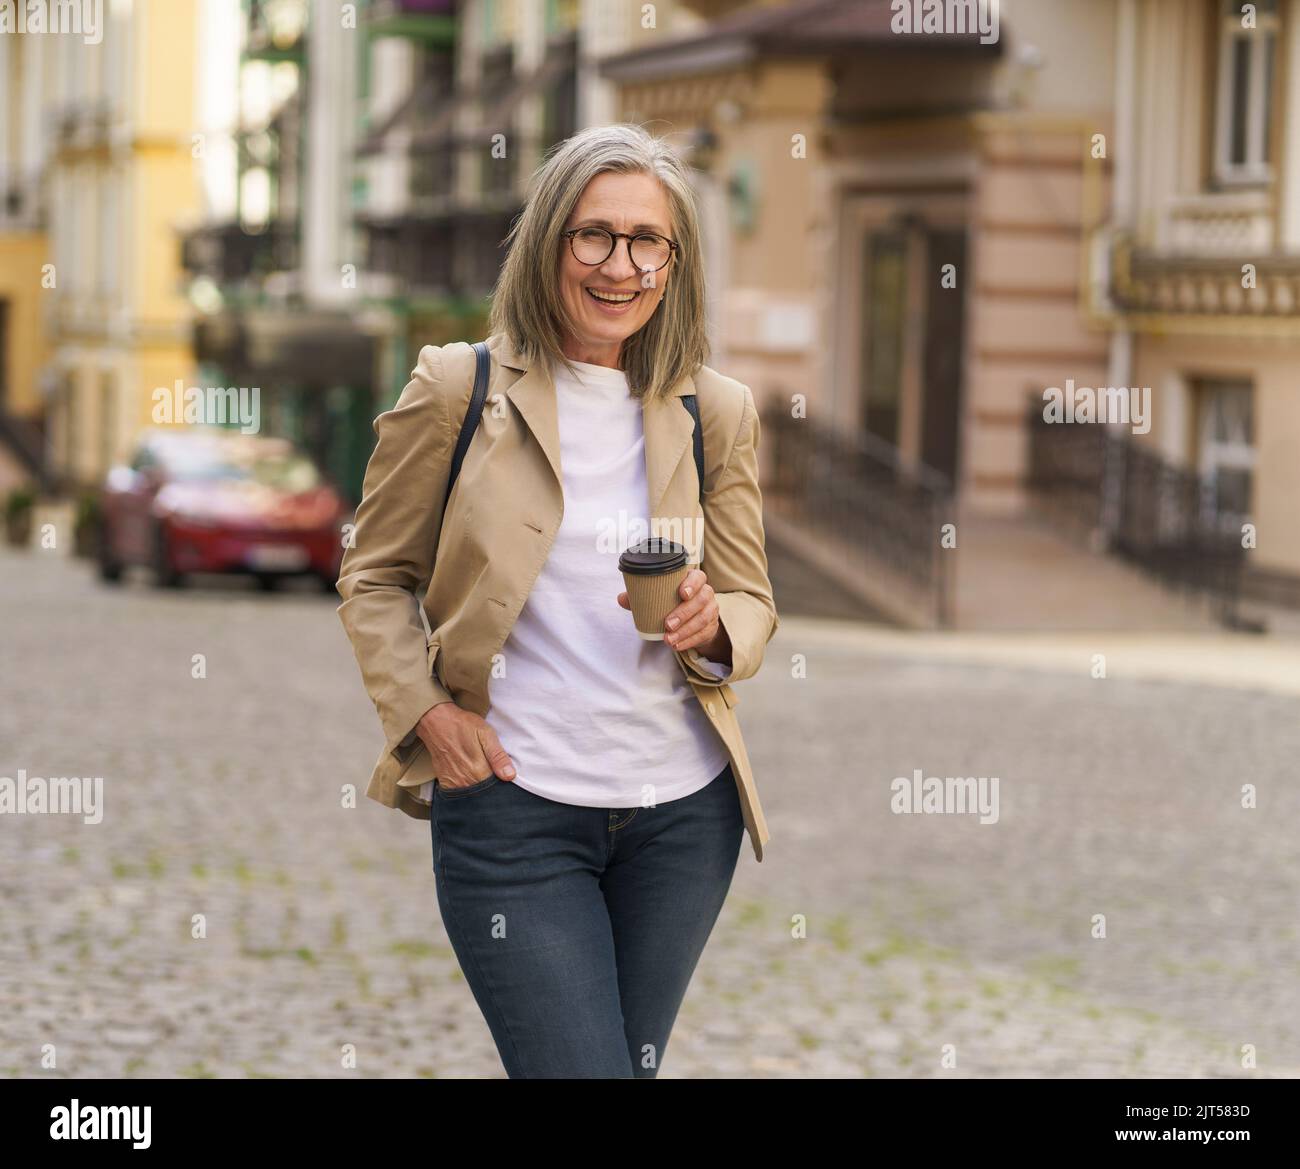 Aufgeregte reife Geschäftsfrau in legerer Jacke und Jeans halten Papiertasse mit heißem Kaffee draußen in der Altstadt. Ältere Frauen reisen in der europäischen Stadt und genießen eine Tasse Tee oder Kaffee. Stockfoto